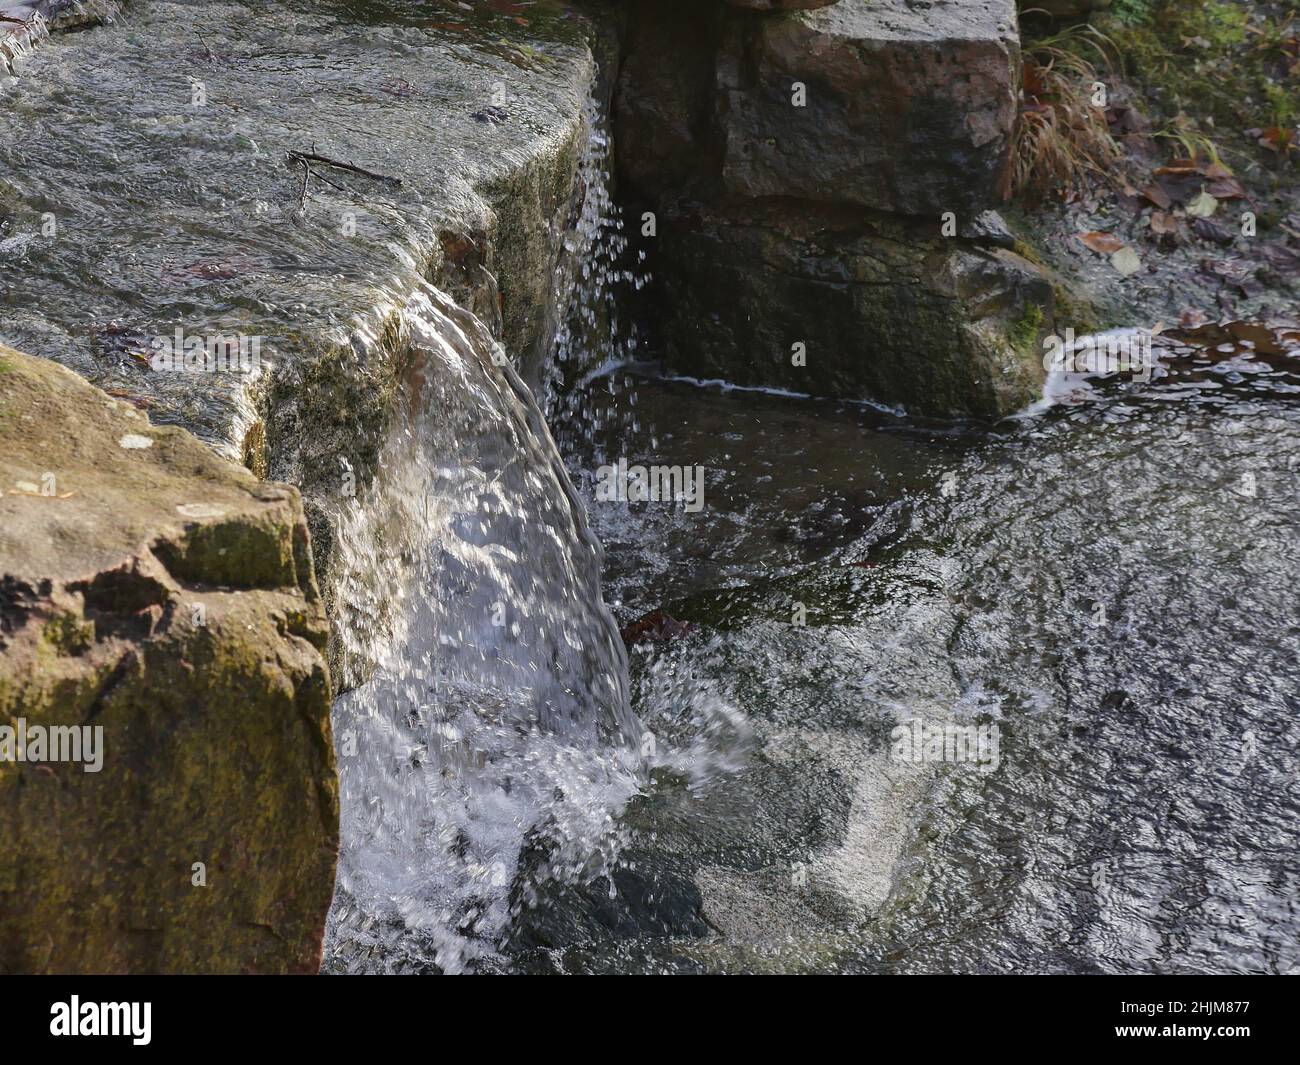 Bach zwischen zwei Felsbrocken, ein Miniatur-Wasserfall. Das Wasser spritzt auf felsigen Boden, wenn es auf den Boden trifft. Stockfoto